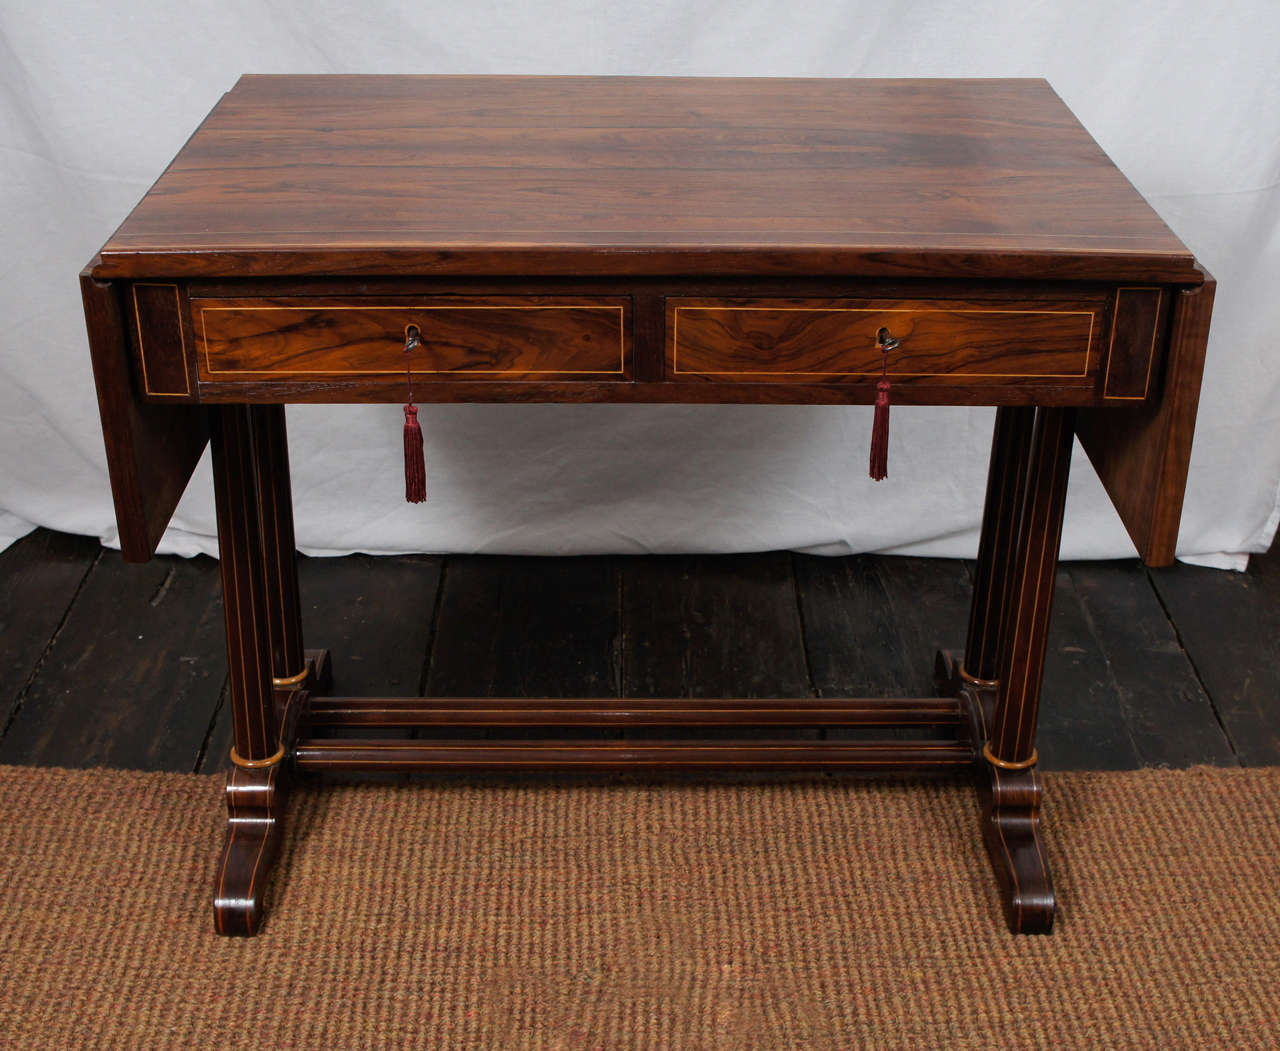 Cette belle table de canapé fabriquée vers 1820 est d'origine française. La table donne une impression presque moderne  ses lignes simples et  profil raffiné. Fabriqué à partir d'un bois de rose très décoratif avec des veines exagérées et